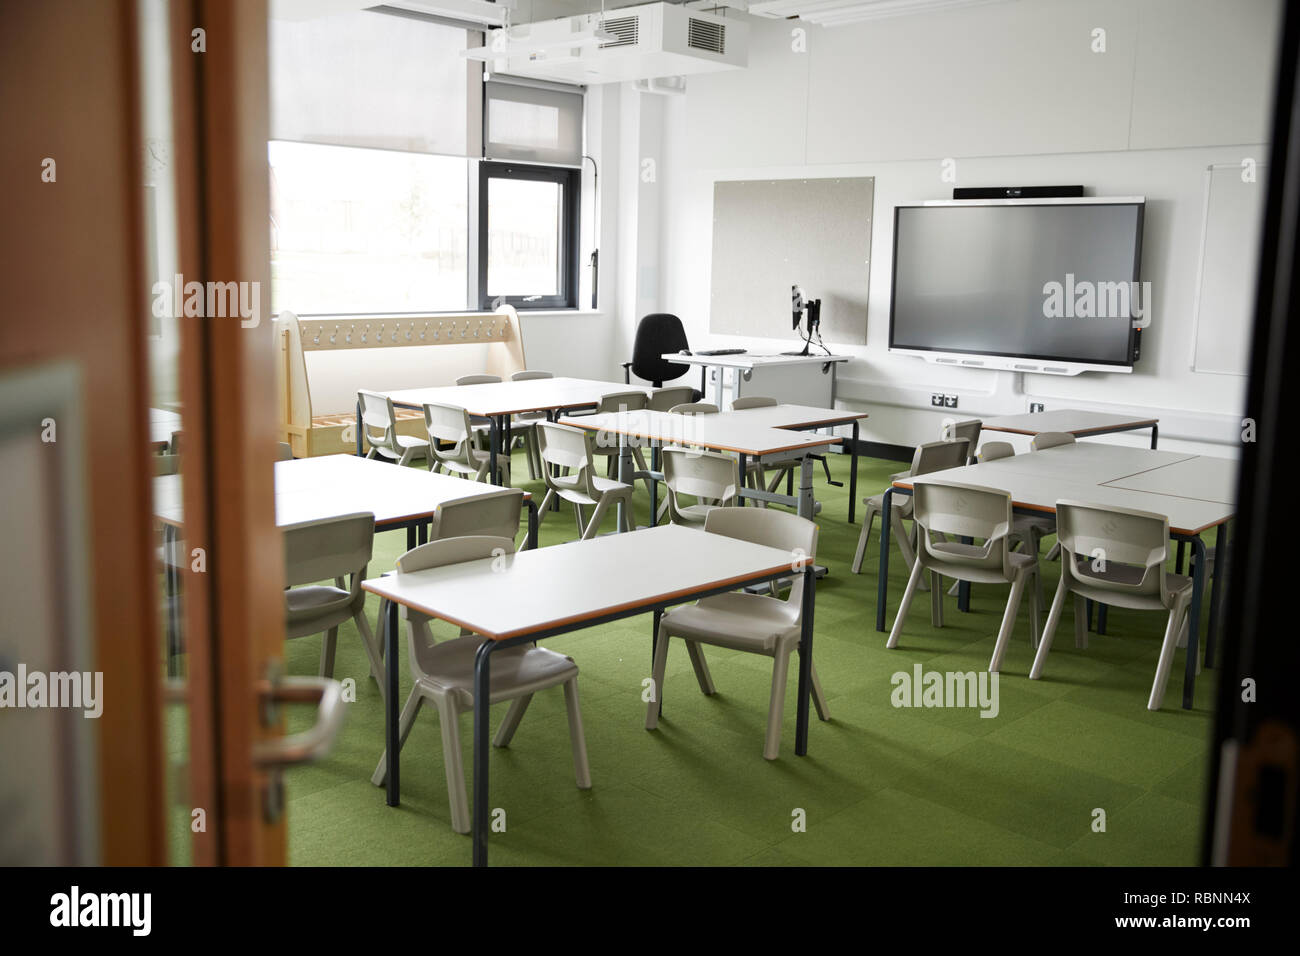 Ein leeres Klassenzimmer in einer Grundschule mit weißen Tischen und Stühlen, vom Eingang gesehen Stockfoto